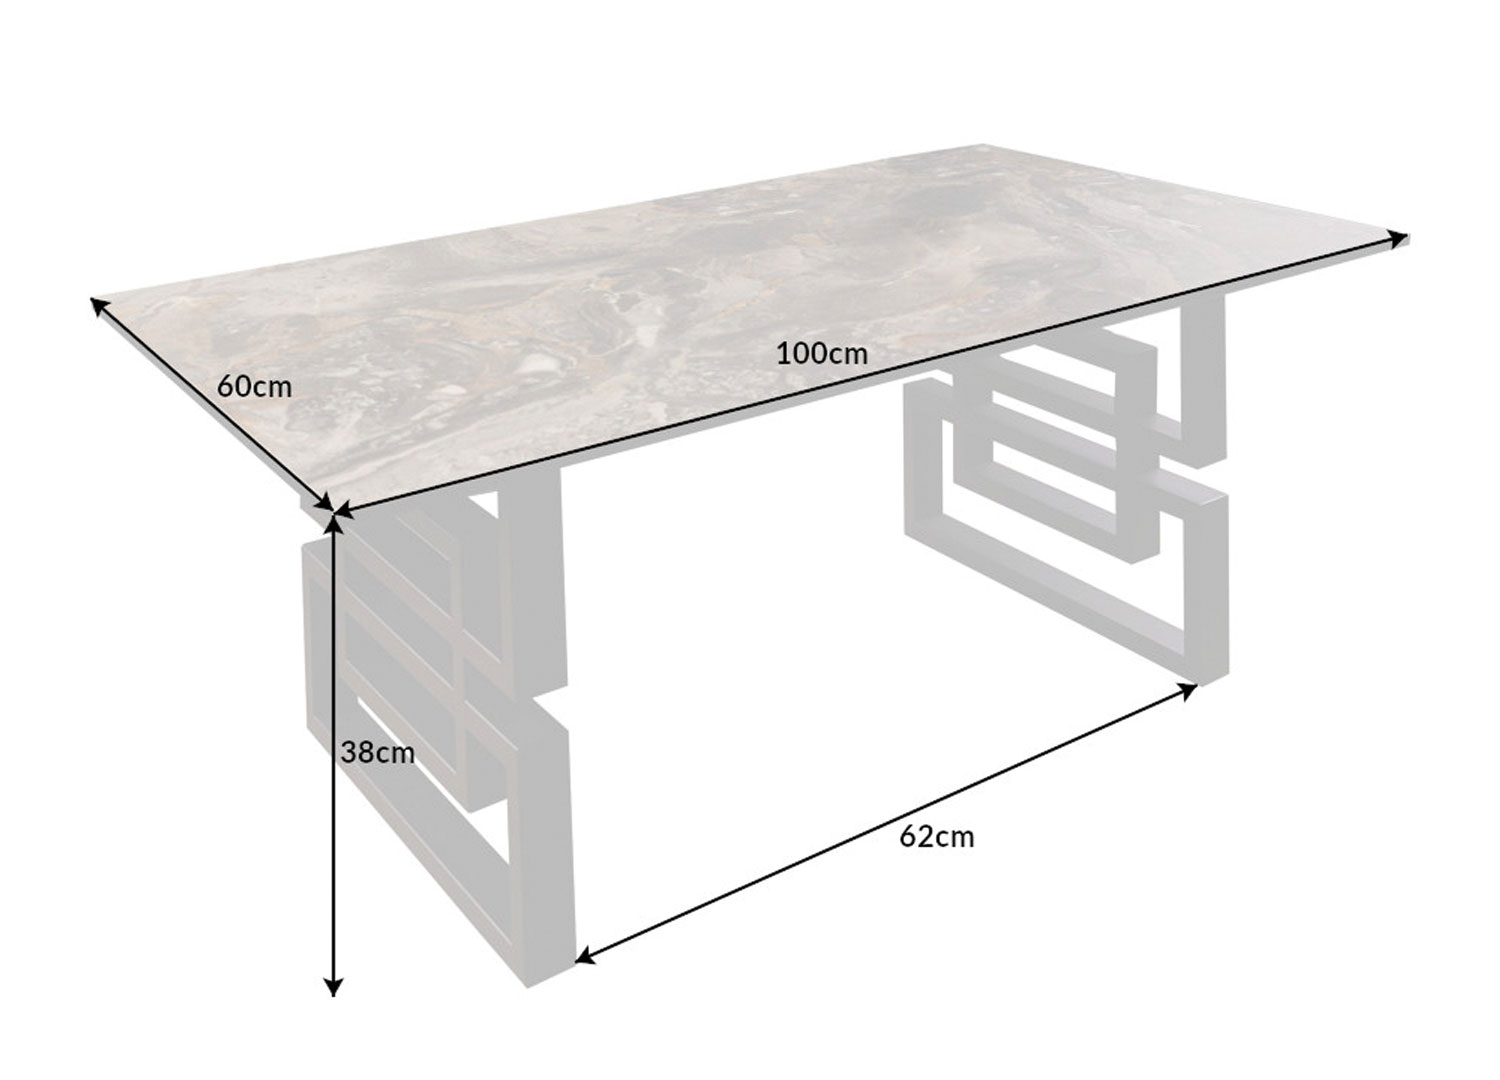 détail des dimensions de la table basse